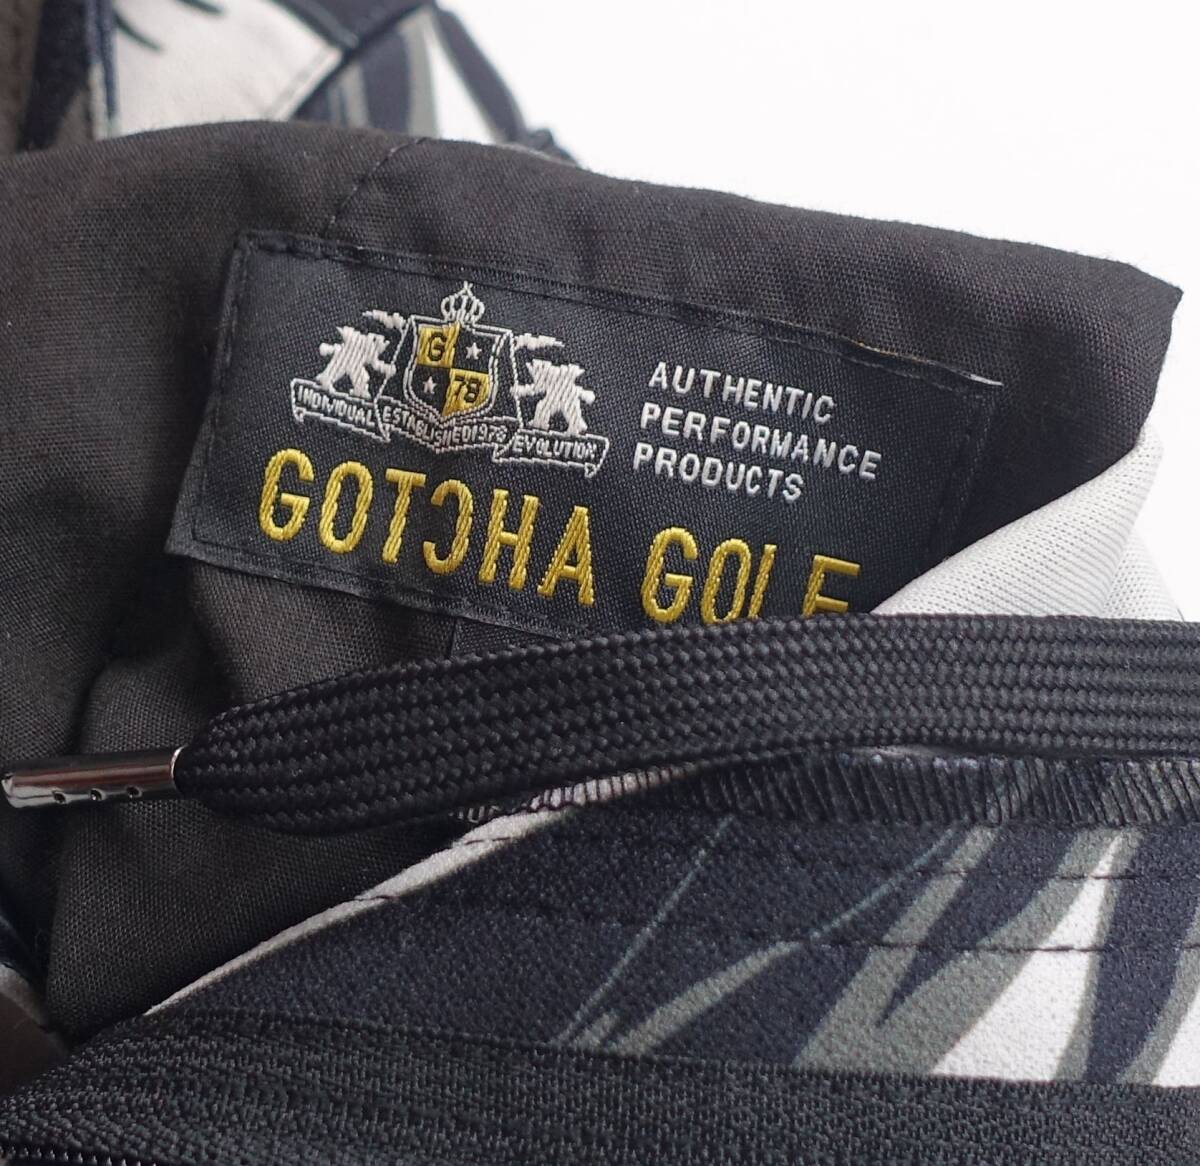  новый товар M размер Gotcha Golf контакт охлаждающий стрейч длинные брюки весна лето GOTCHA GOLF низ стрейч мужской Golf одежда 